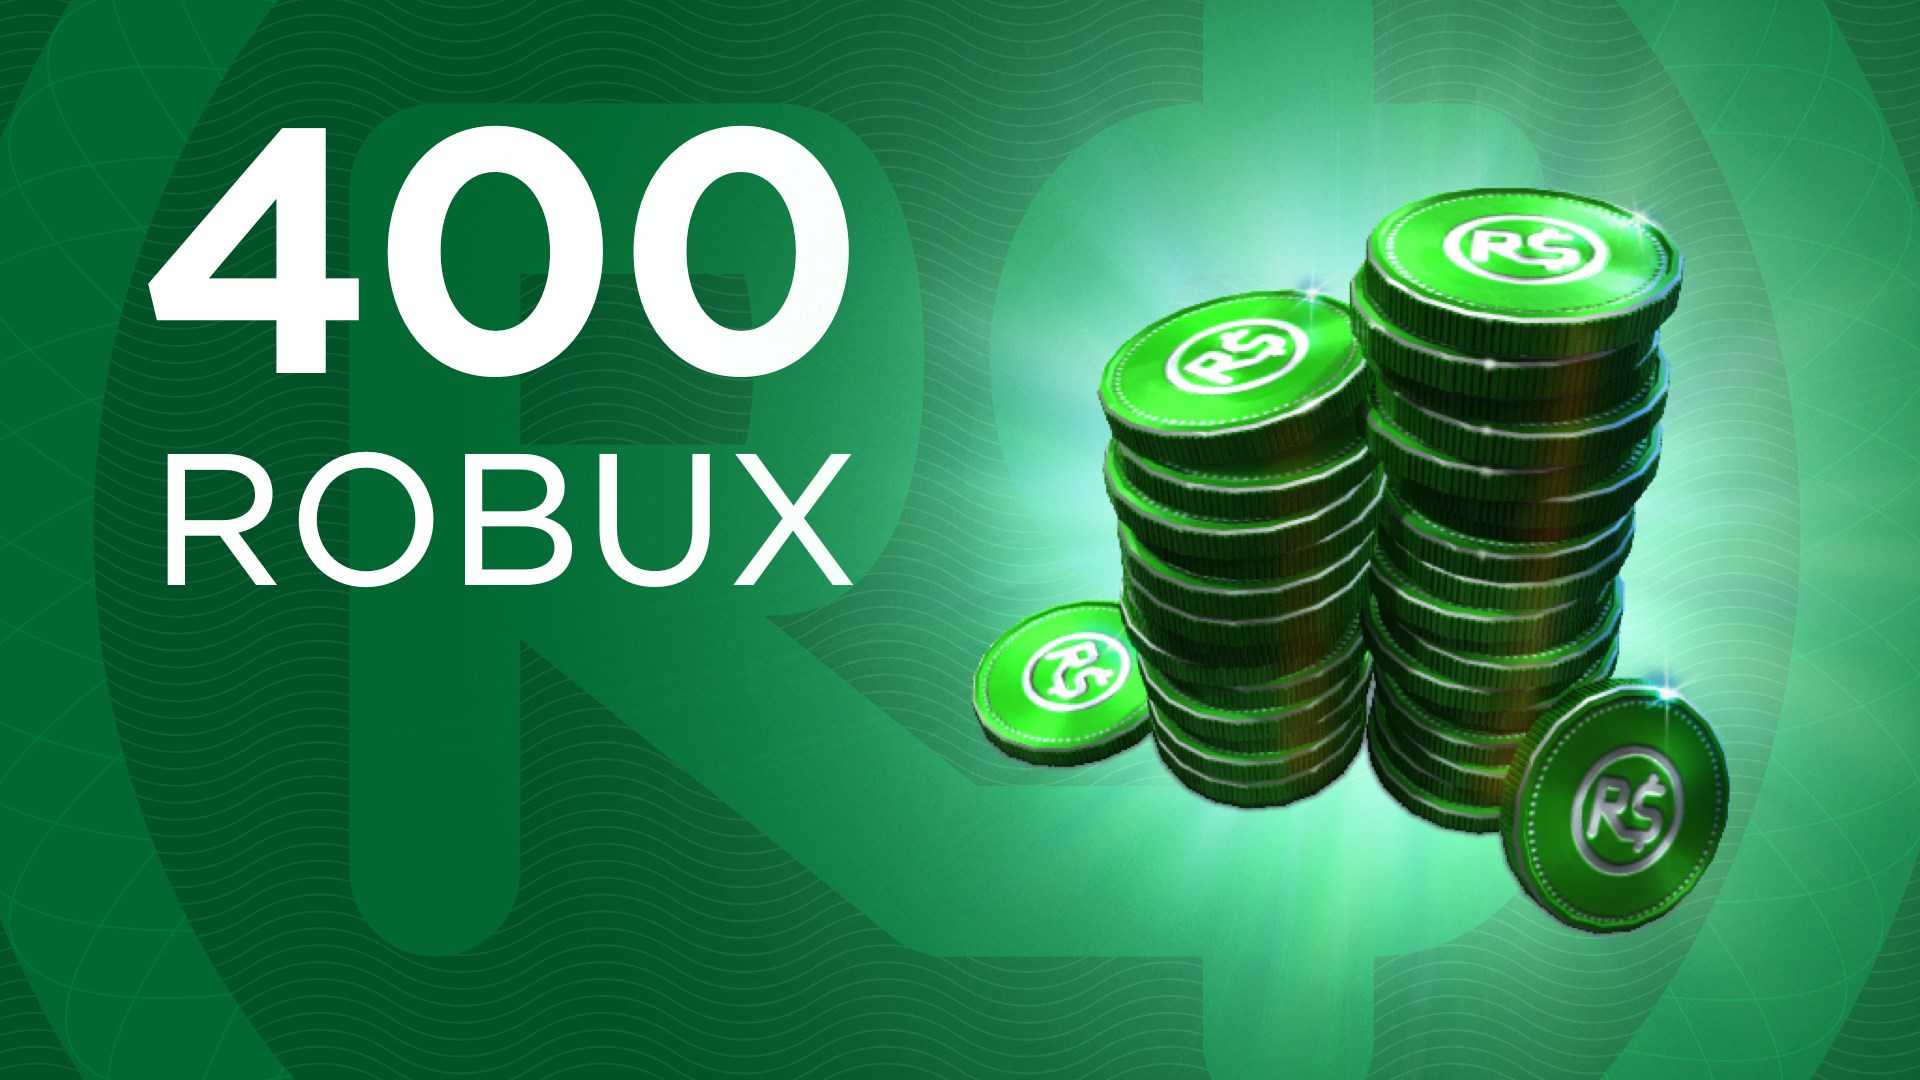 400 Robux Free